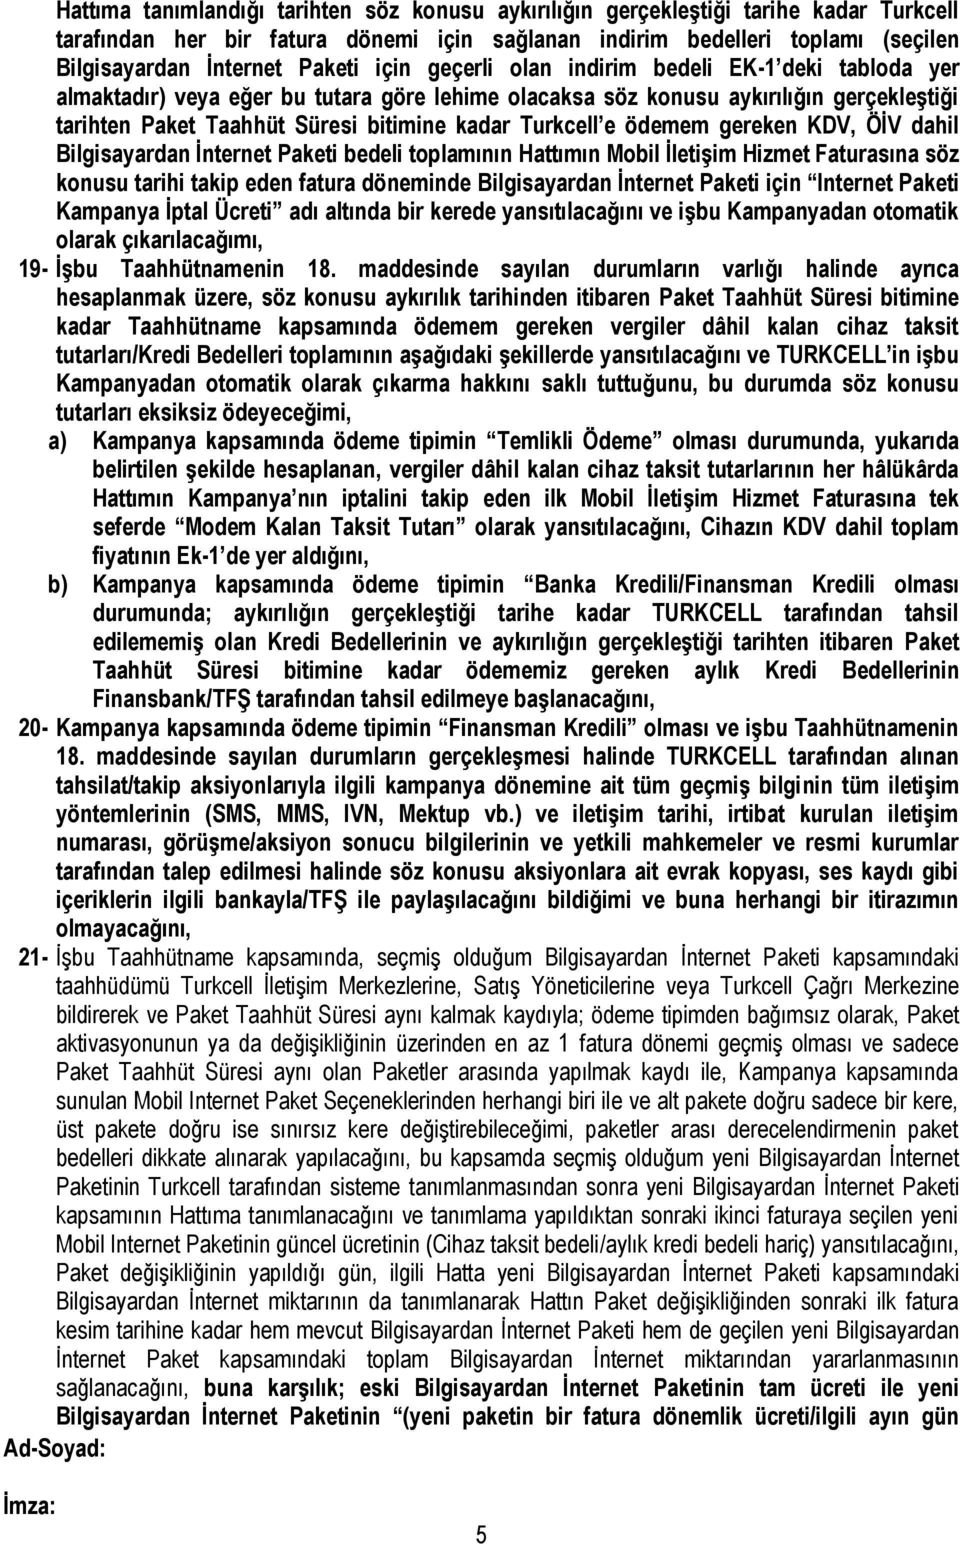 Turkcell e ödemem gereken KDV, ÖİV dahil Bilgisayardan İnternet Paketi bedeli toplamının Hattımın Mobil İletişim Hizmet Faturasına söz konusu tarihi takip eden fatura döneminde Bilgisayardan İnternet